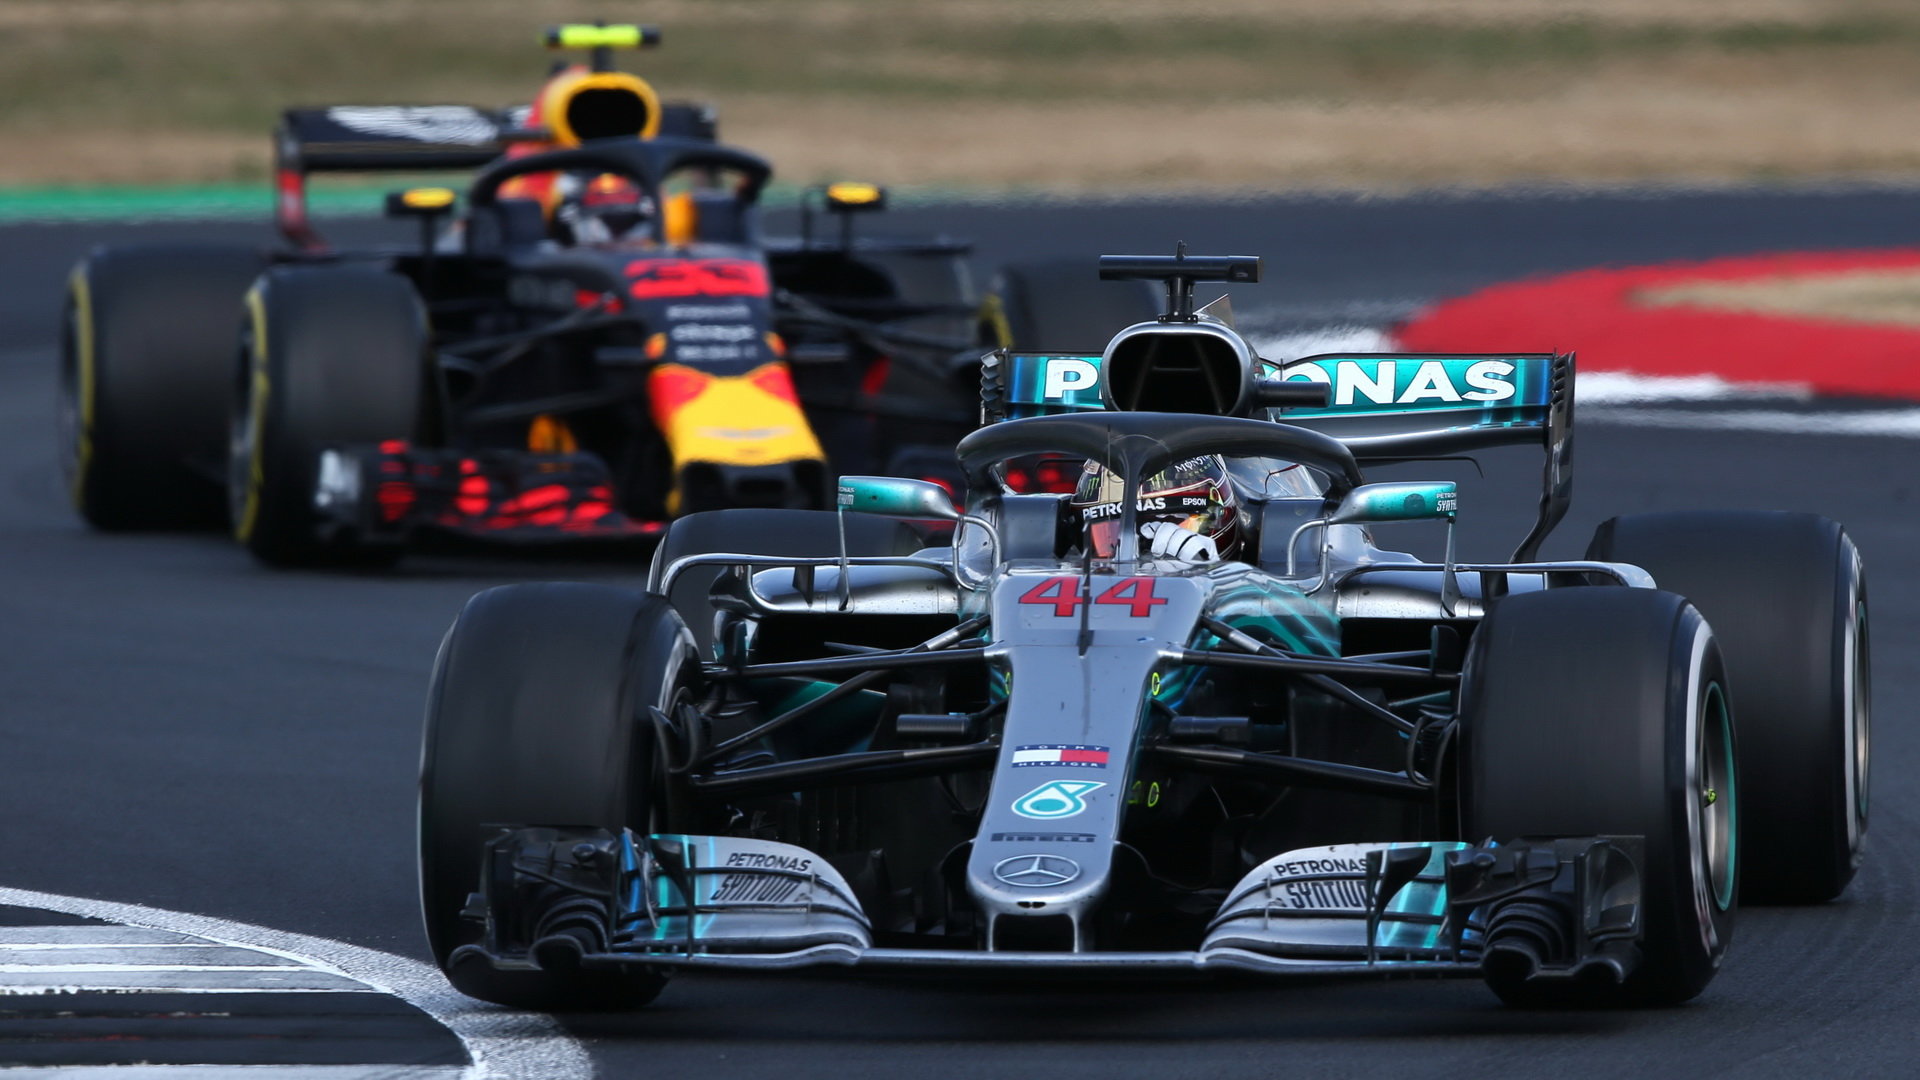 Red Bull věří, že by v Maďarsku mohl lídry šampionátu porazit, penalizacím se tam i přes odstoupení Ricciarda v Německu vyhne